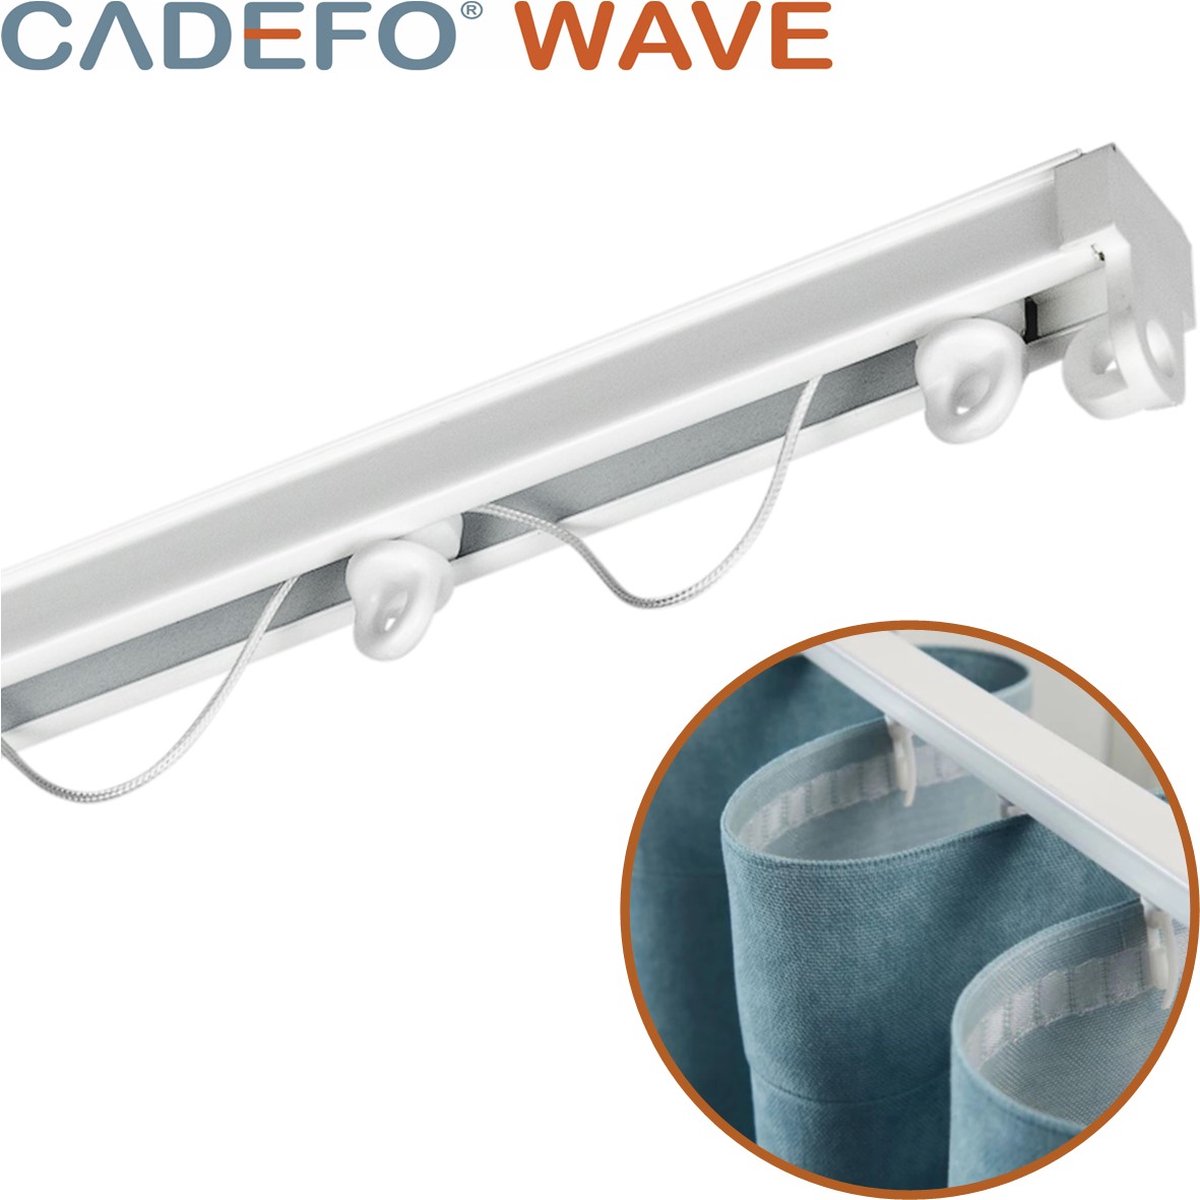 CADEFO WAVE (301 - 350 cm) Gordijnrails - Compleet op maat! - UIT 1 STUK - Leverbaar tot 6 meter - Plafondbevestiging - Lengte 303 cm